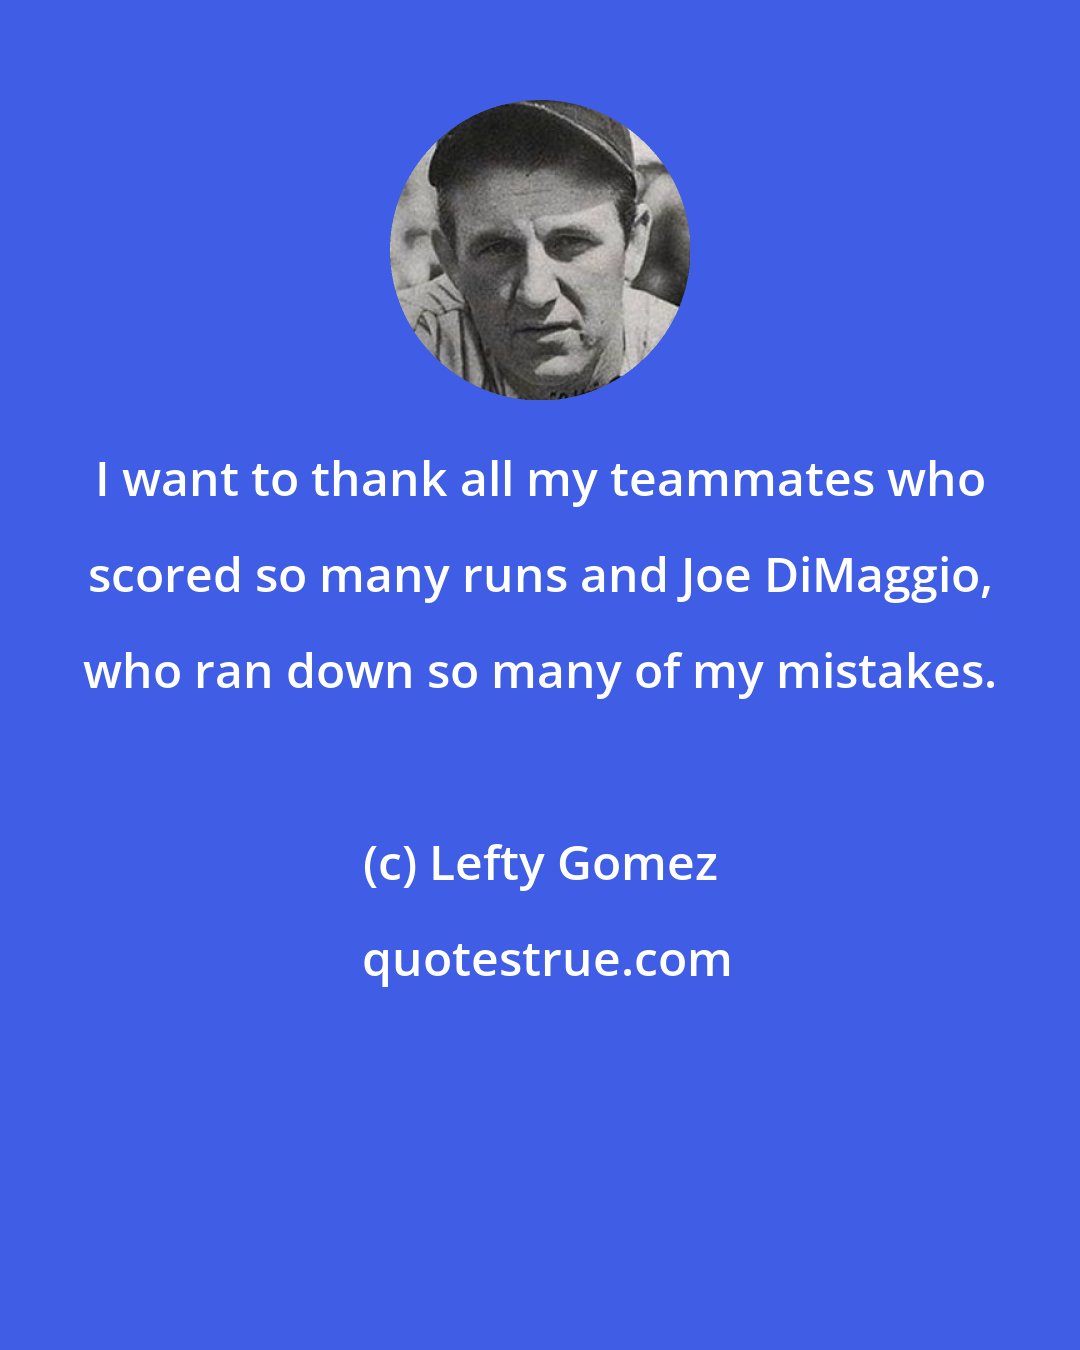 Lefty Gomez: I want to thank all my teammates who scored so many runs and Joe DiMaggio, who ran down so many of my mistakes.